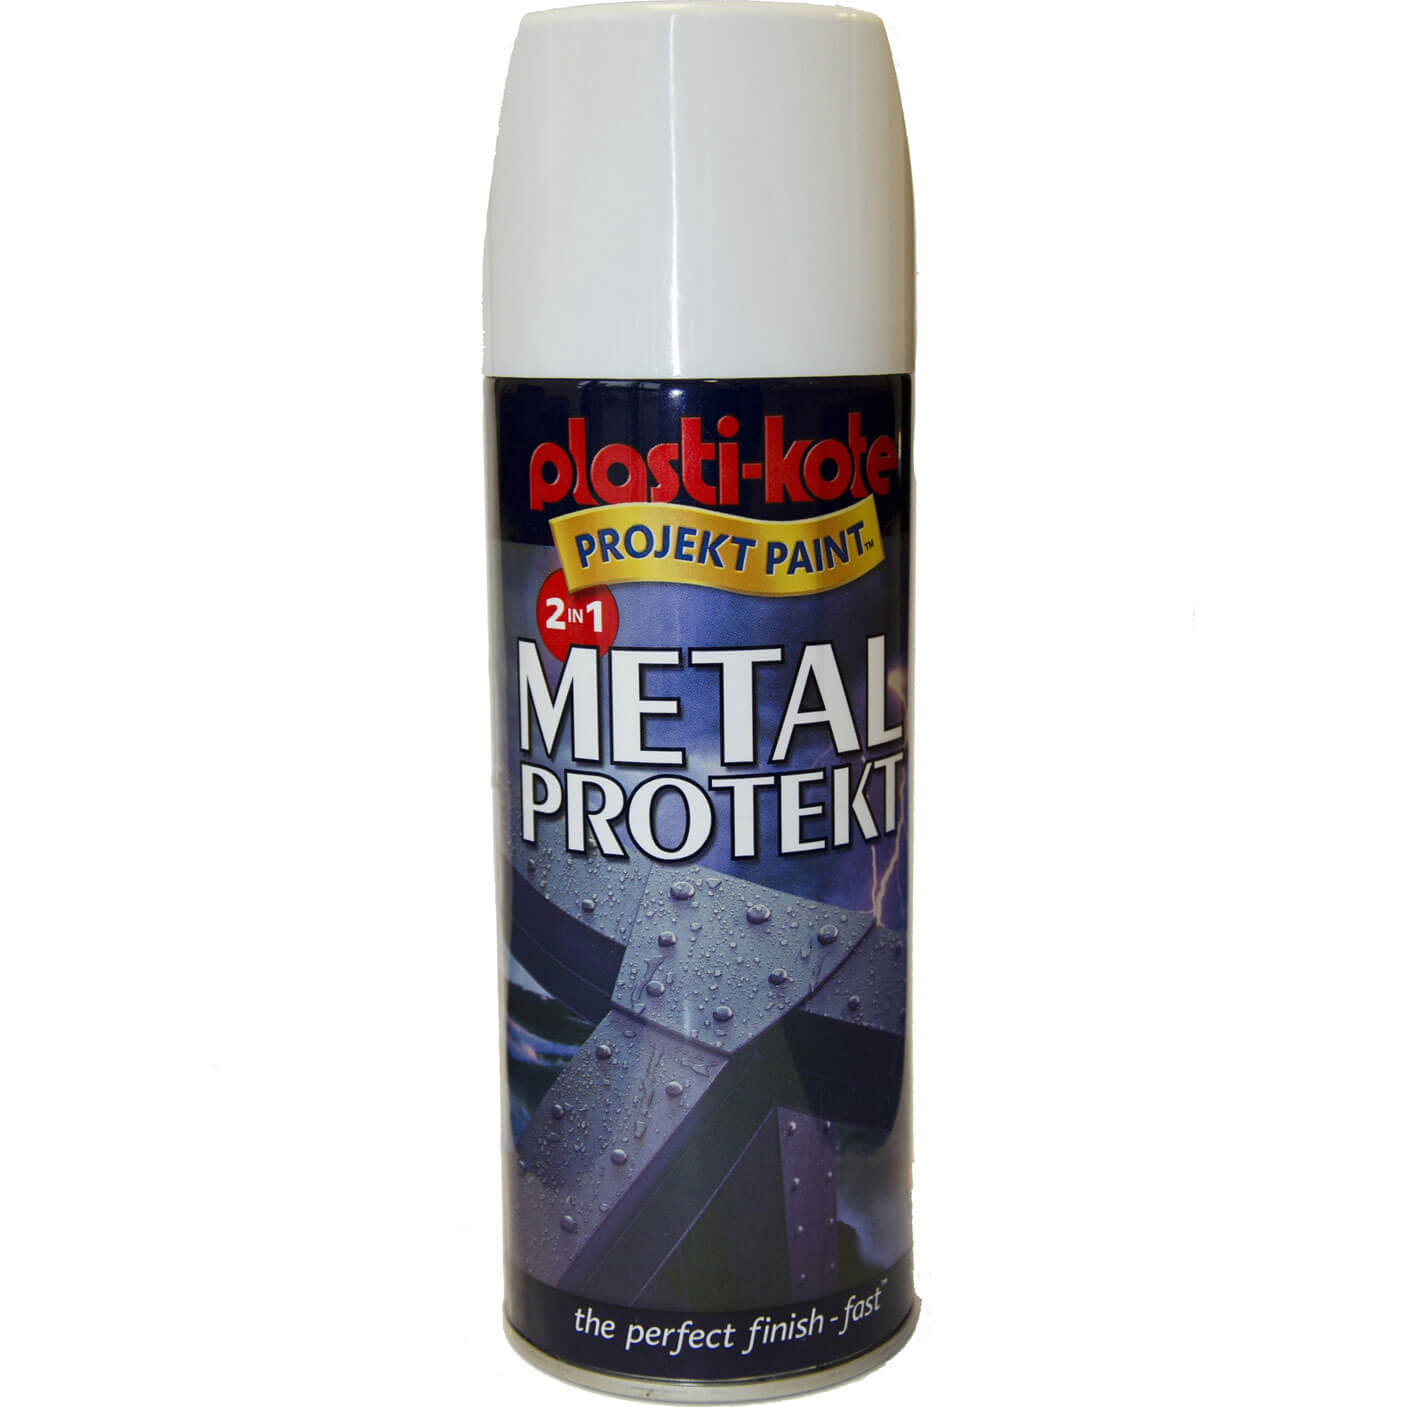 Image of Plastikote Metal Protekt Aerosol Spray Paint White 400ml